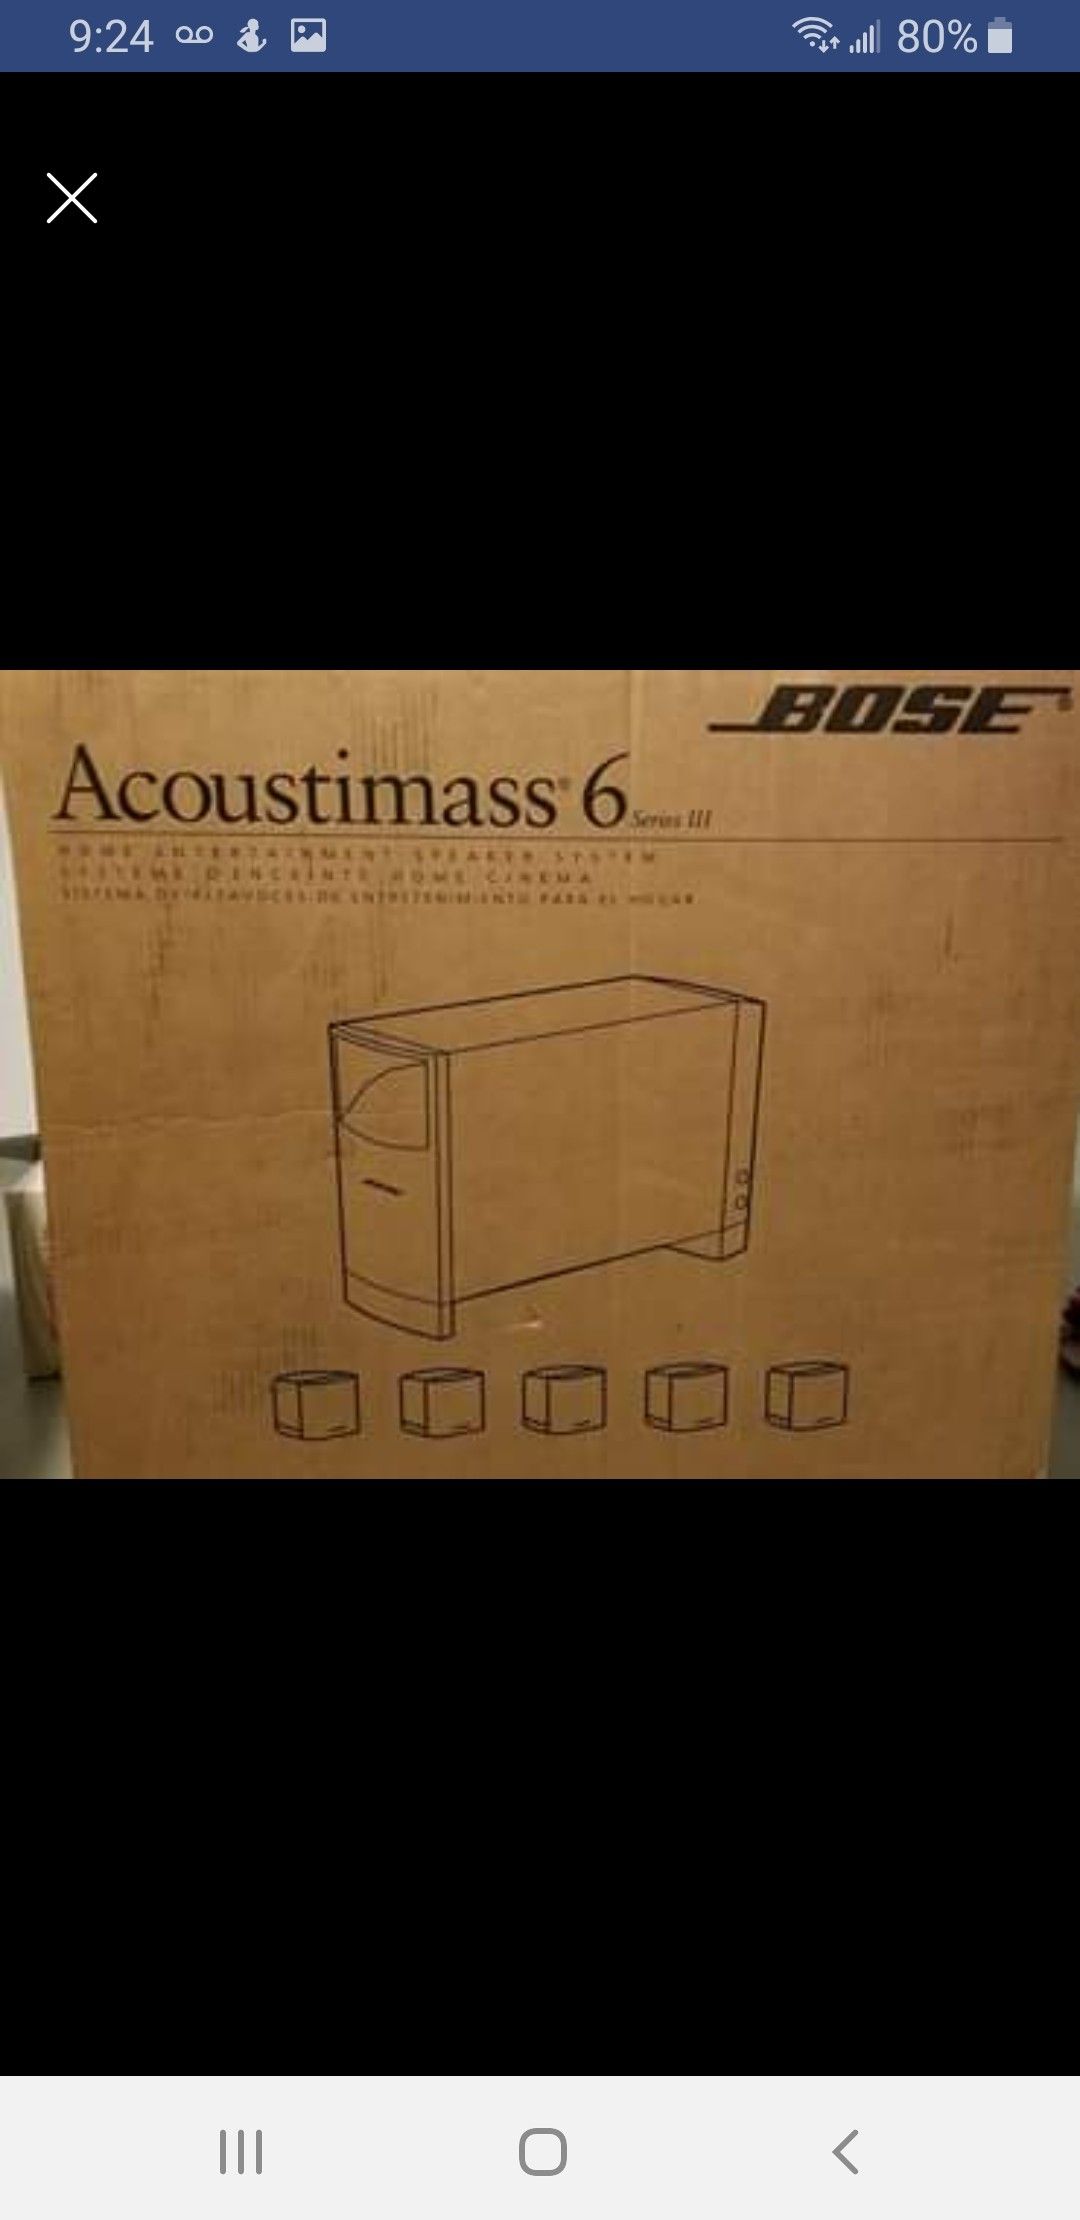 Brand New Bose Acoustimass 6